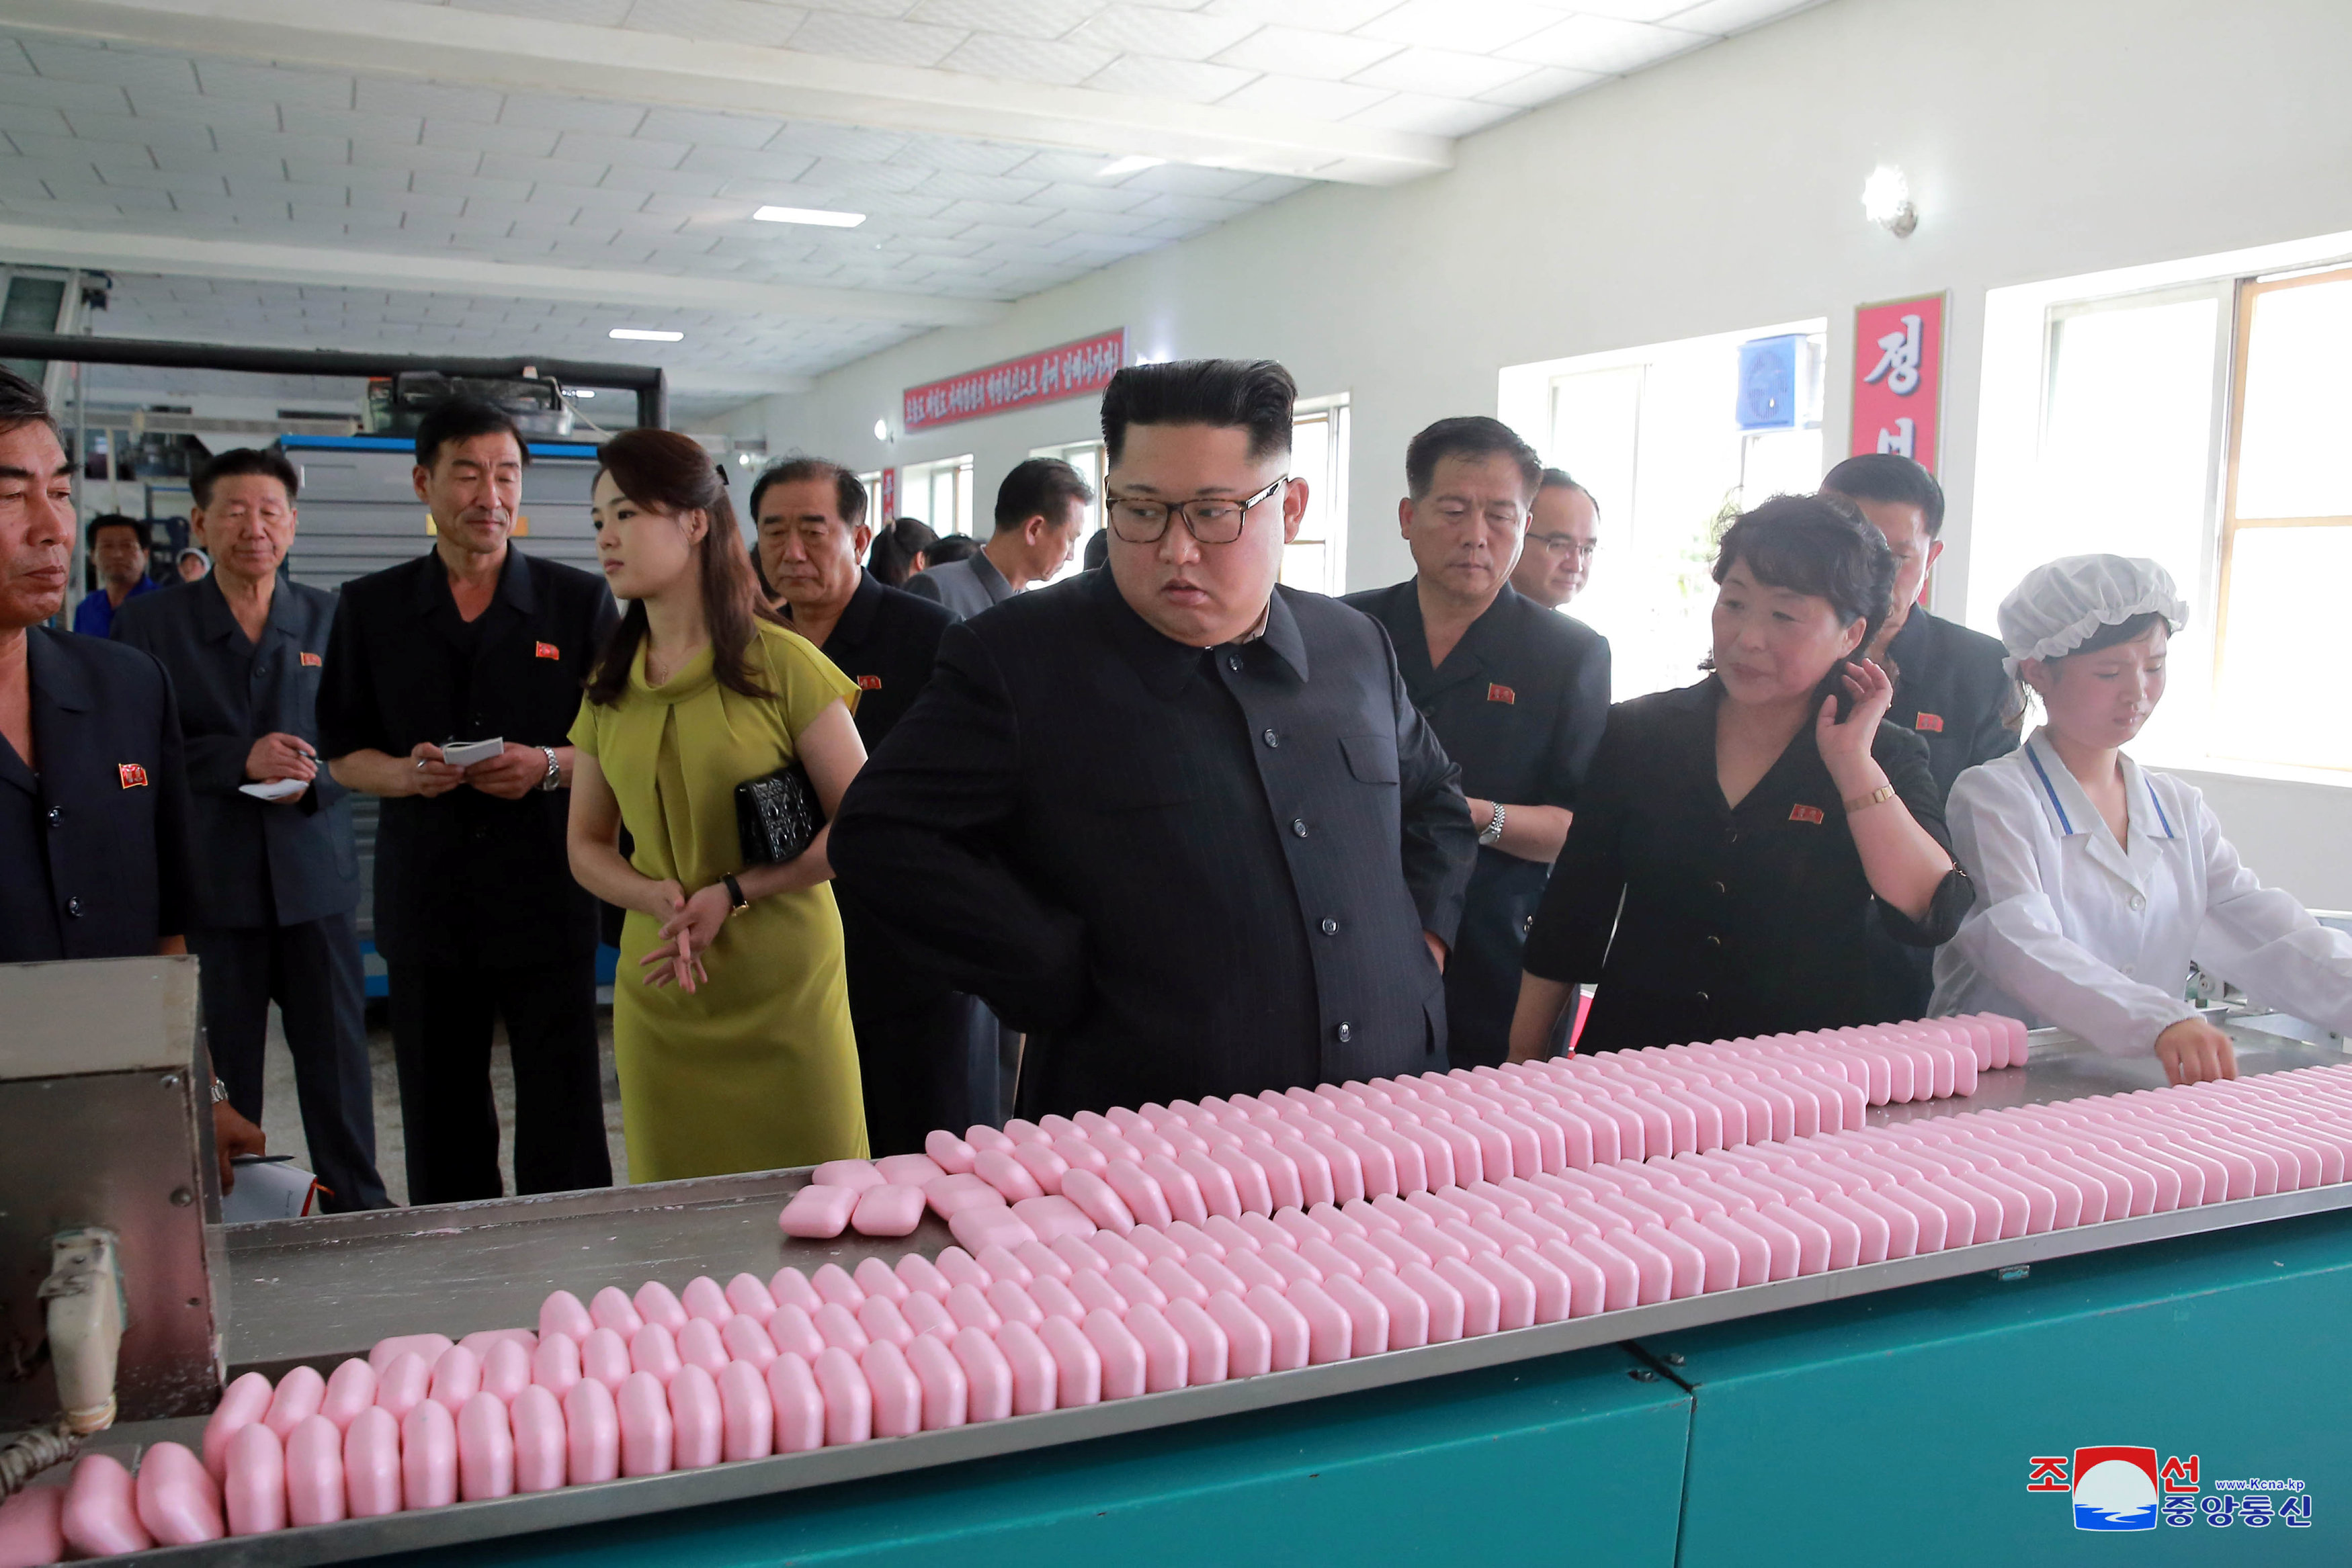 زعيم كوريا الشمالية يتباع خط انتاج الصابون